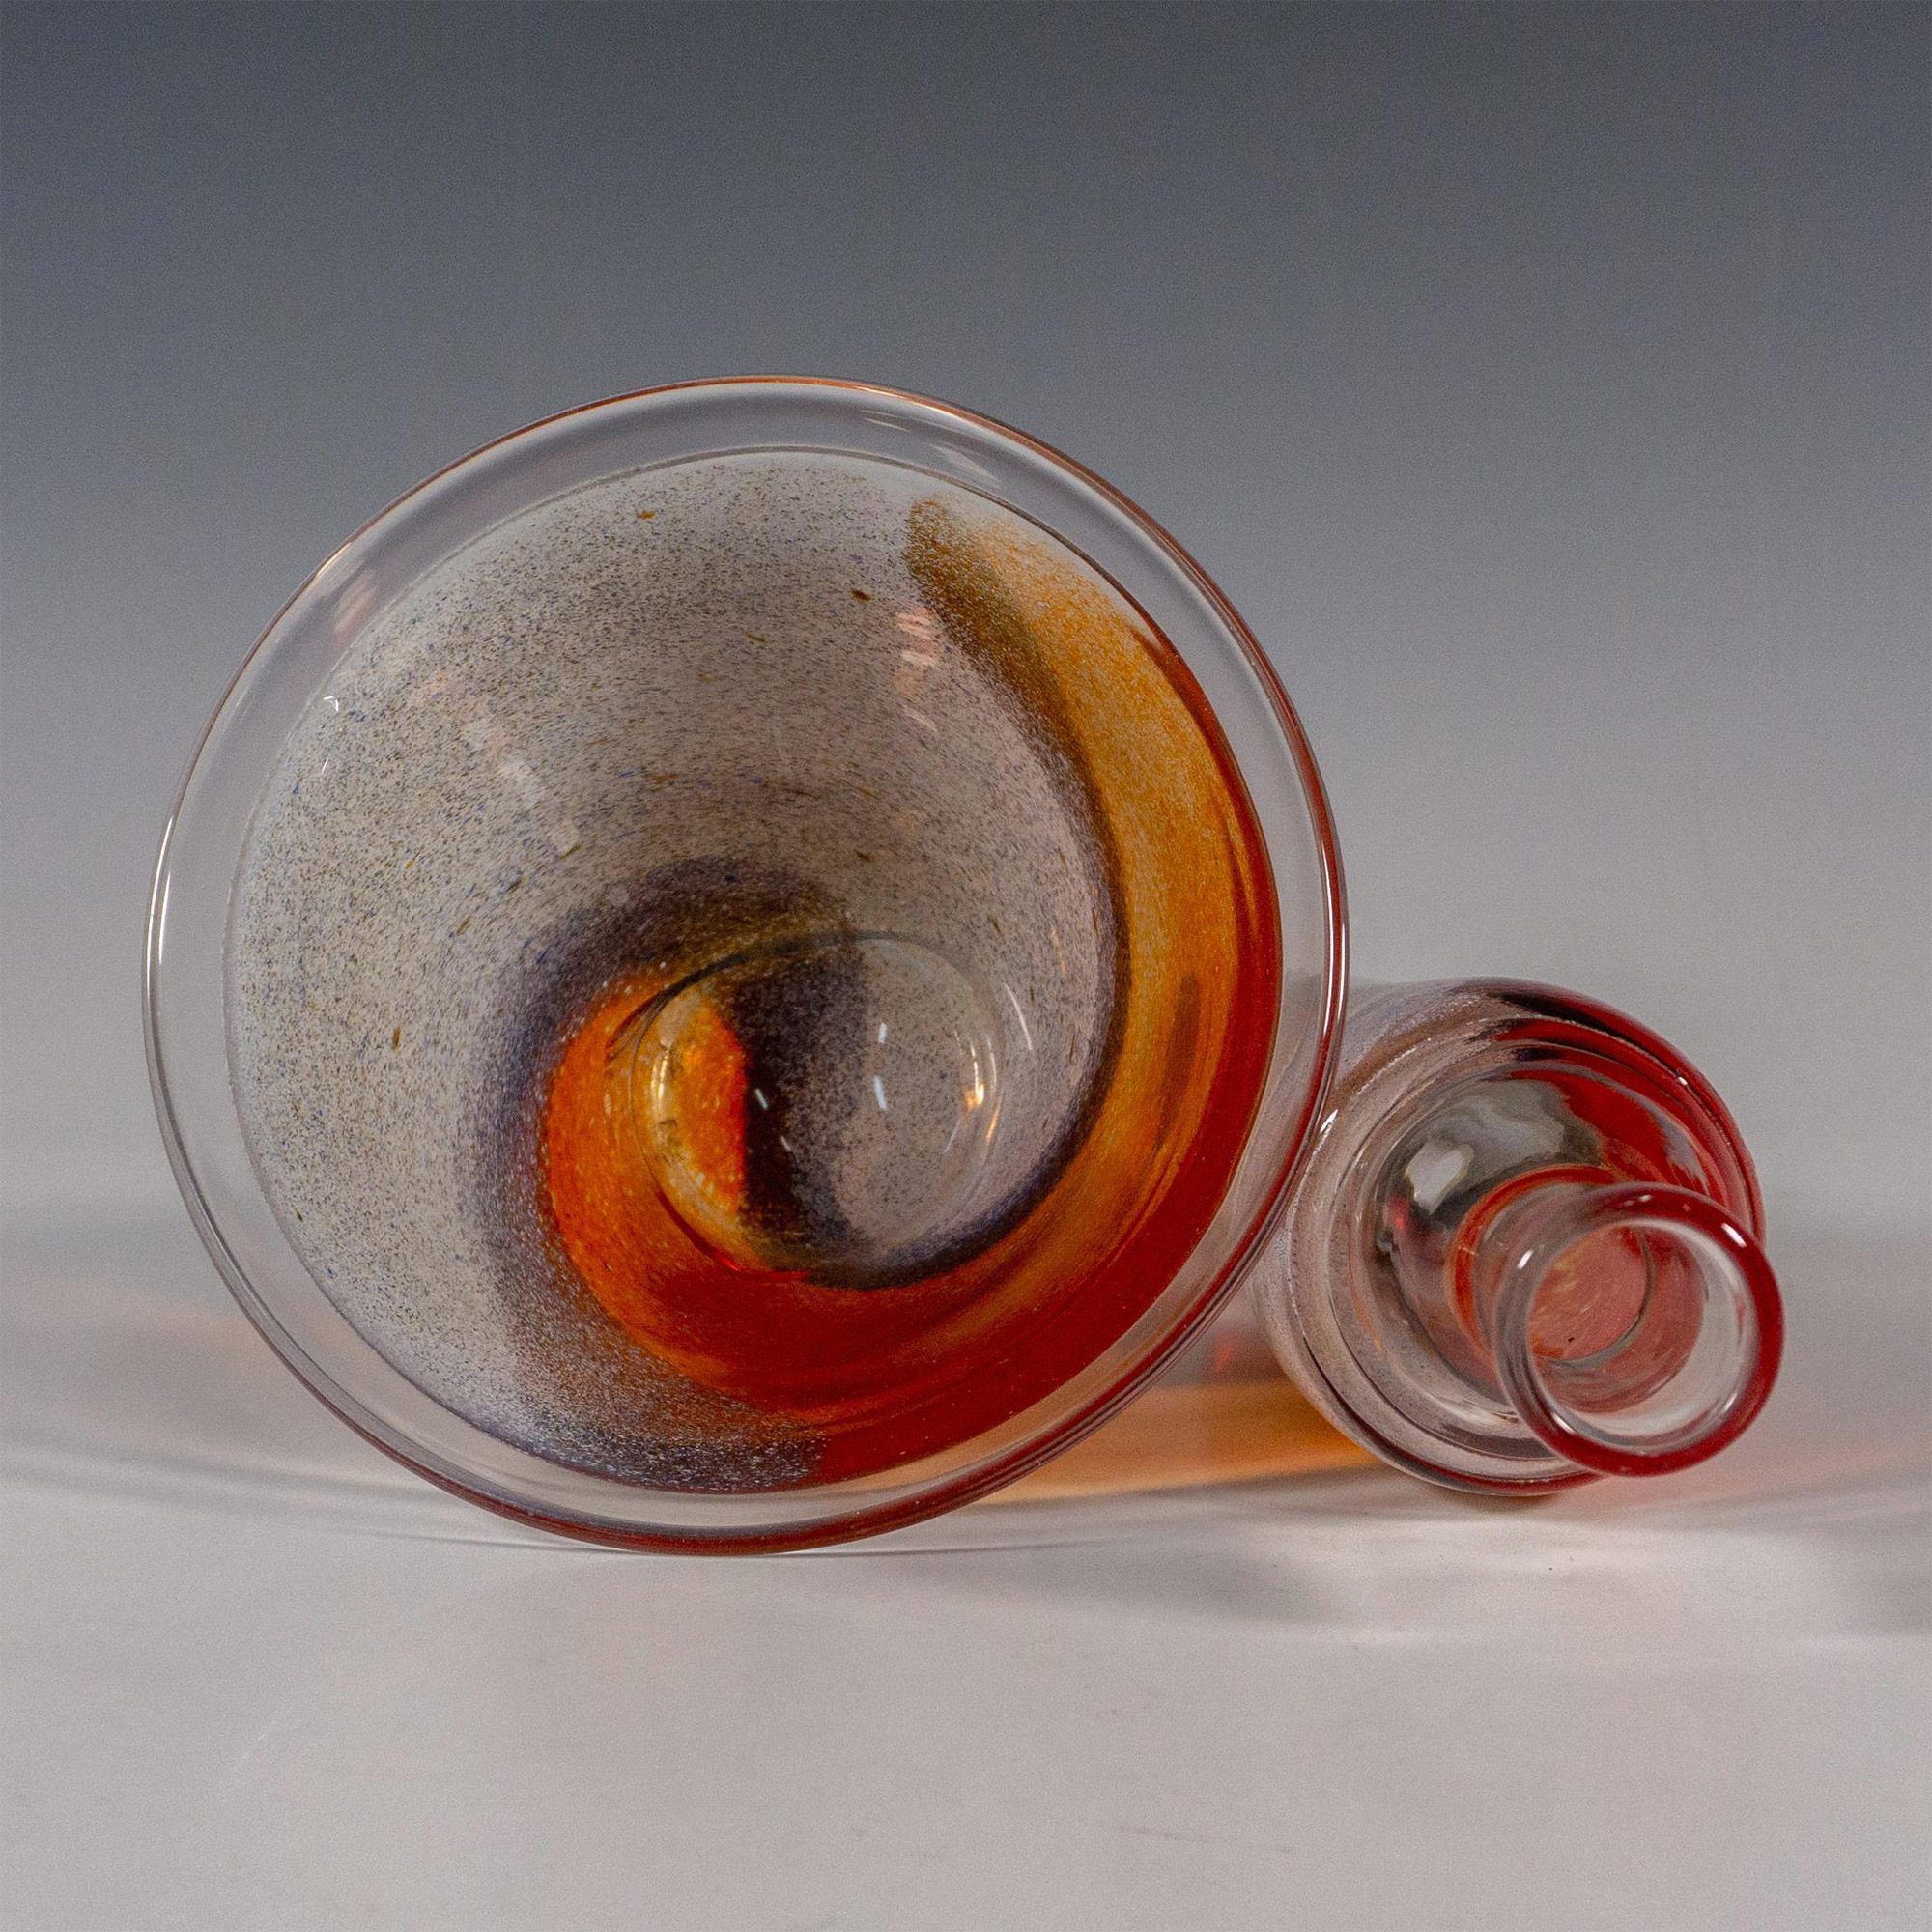 2pc Kosta Boda by Kjell Engman Art Glass Bowl and Vase - Image 4 of 4